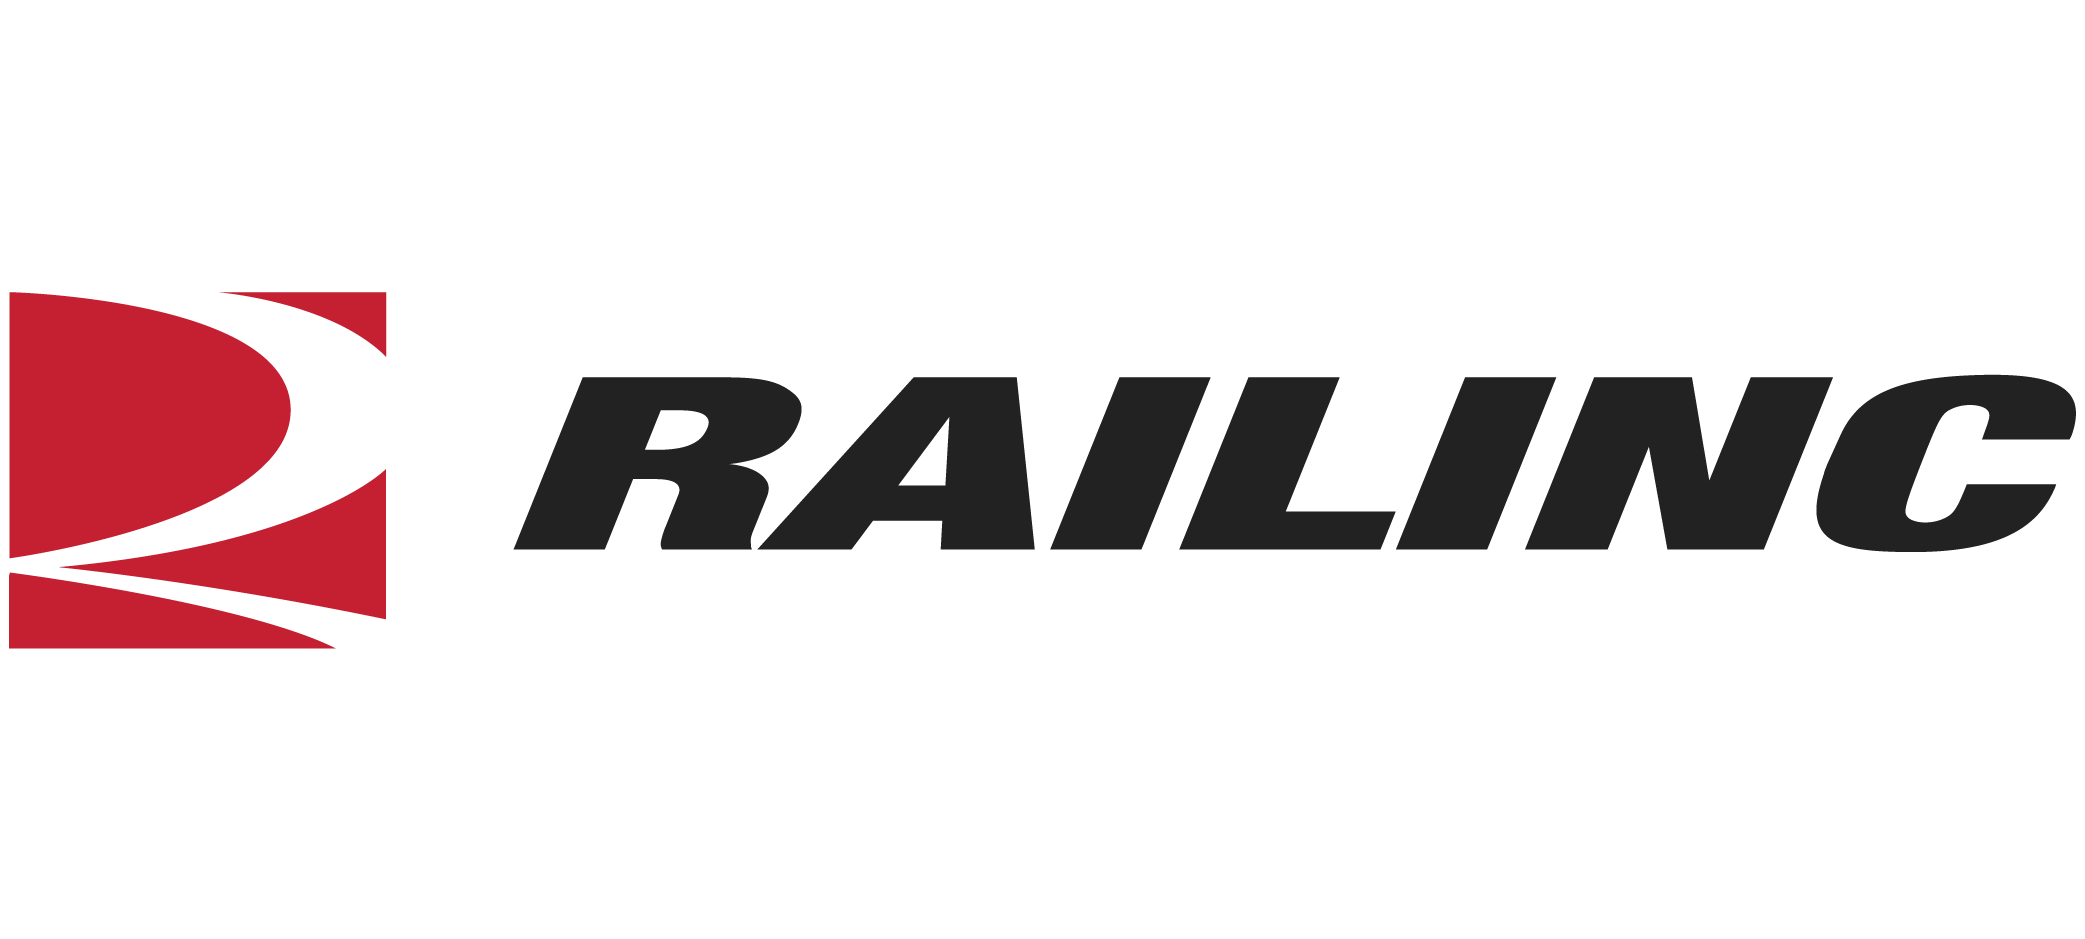 RAILINC